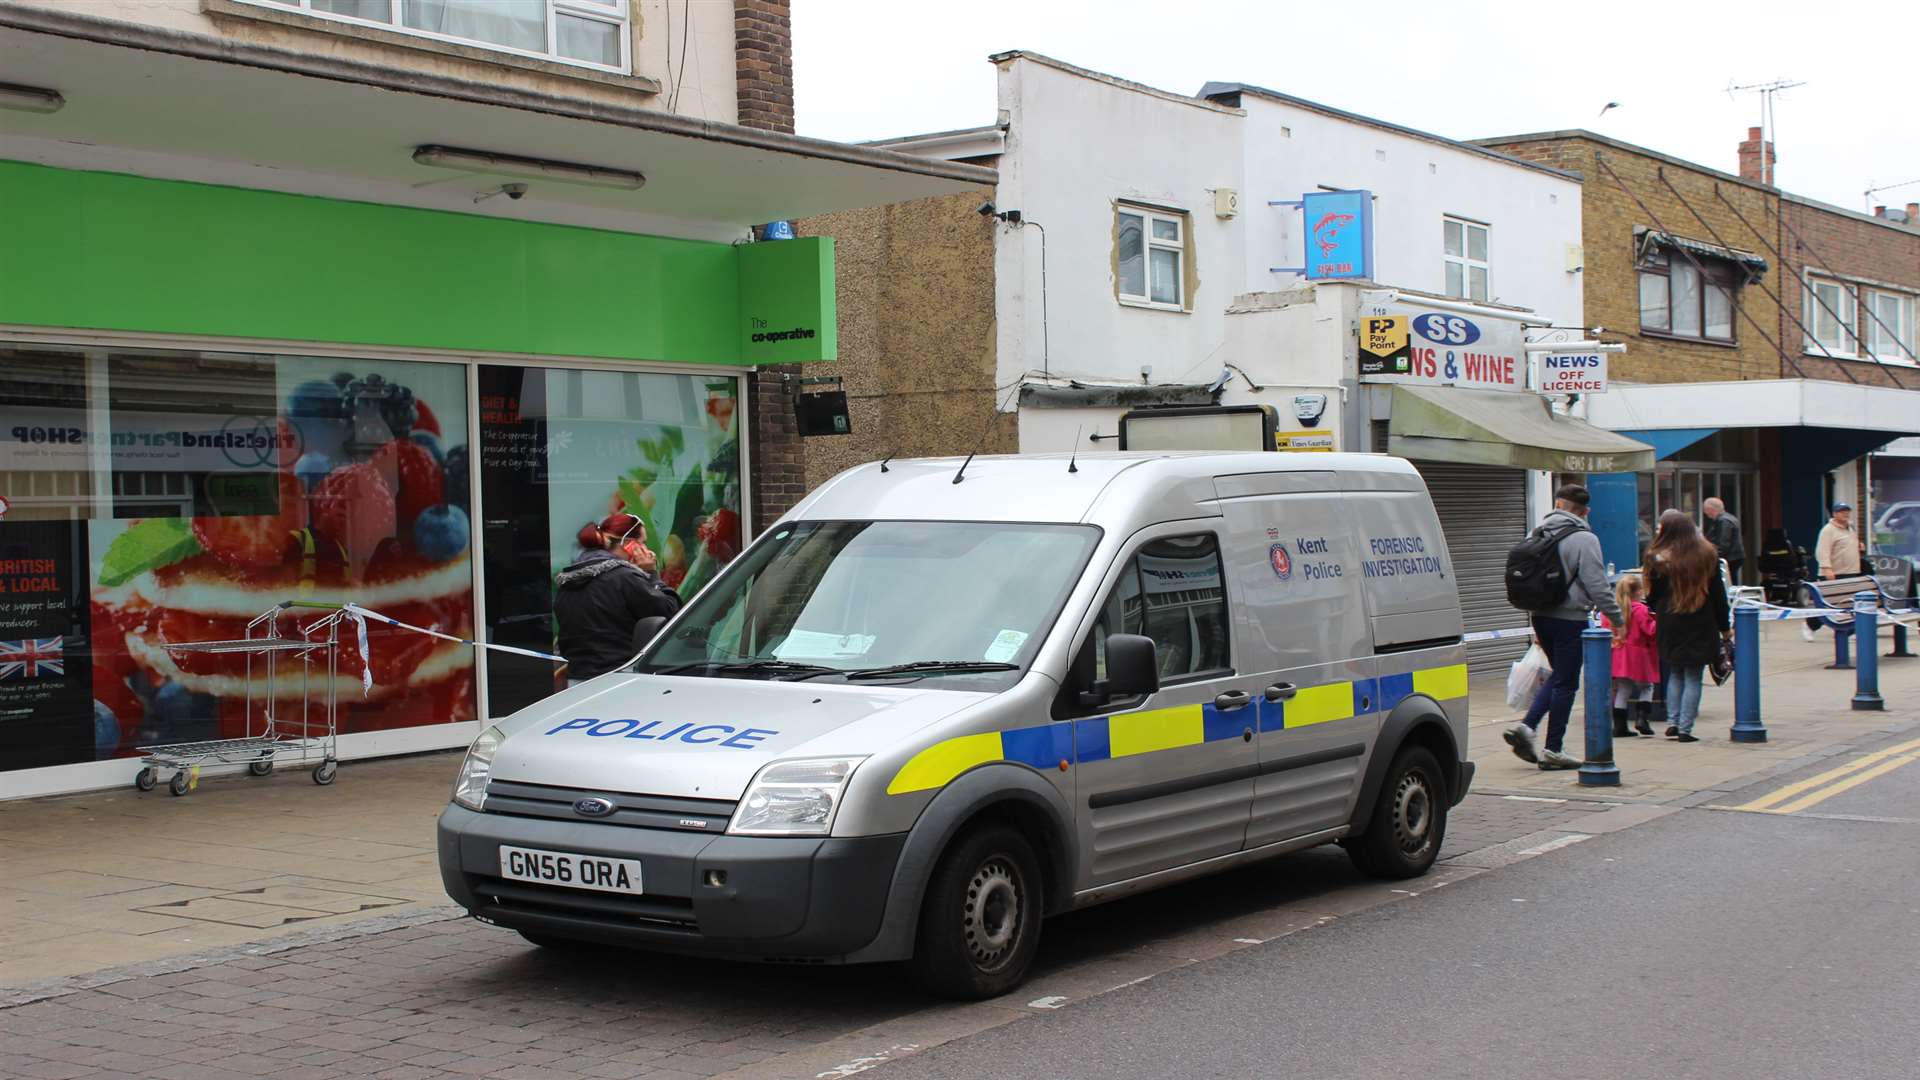 Police forensics van at Wheatsheaf Alley in Sheerness High Street